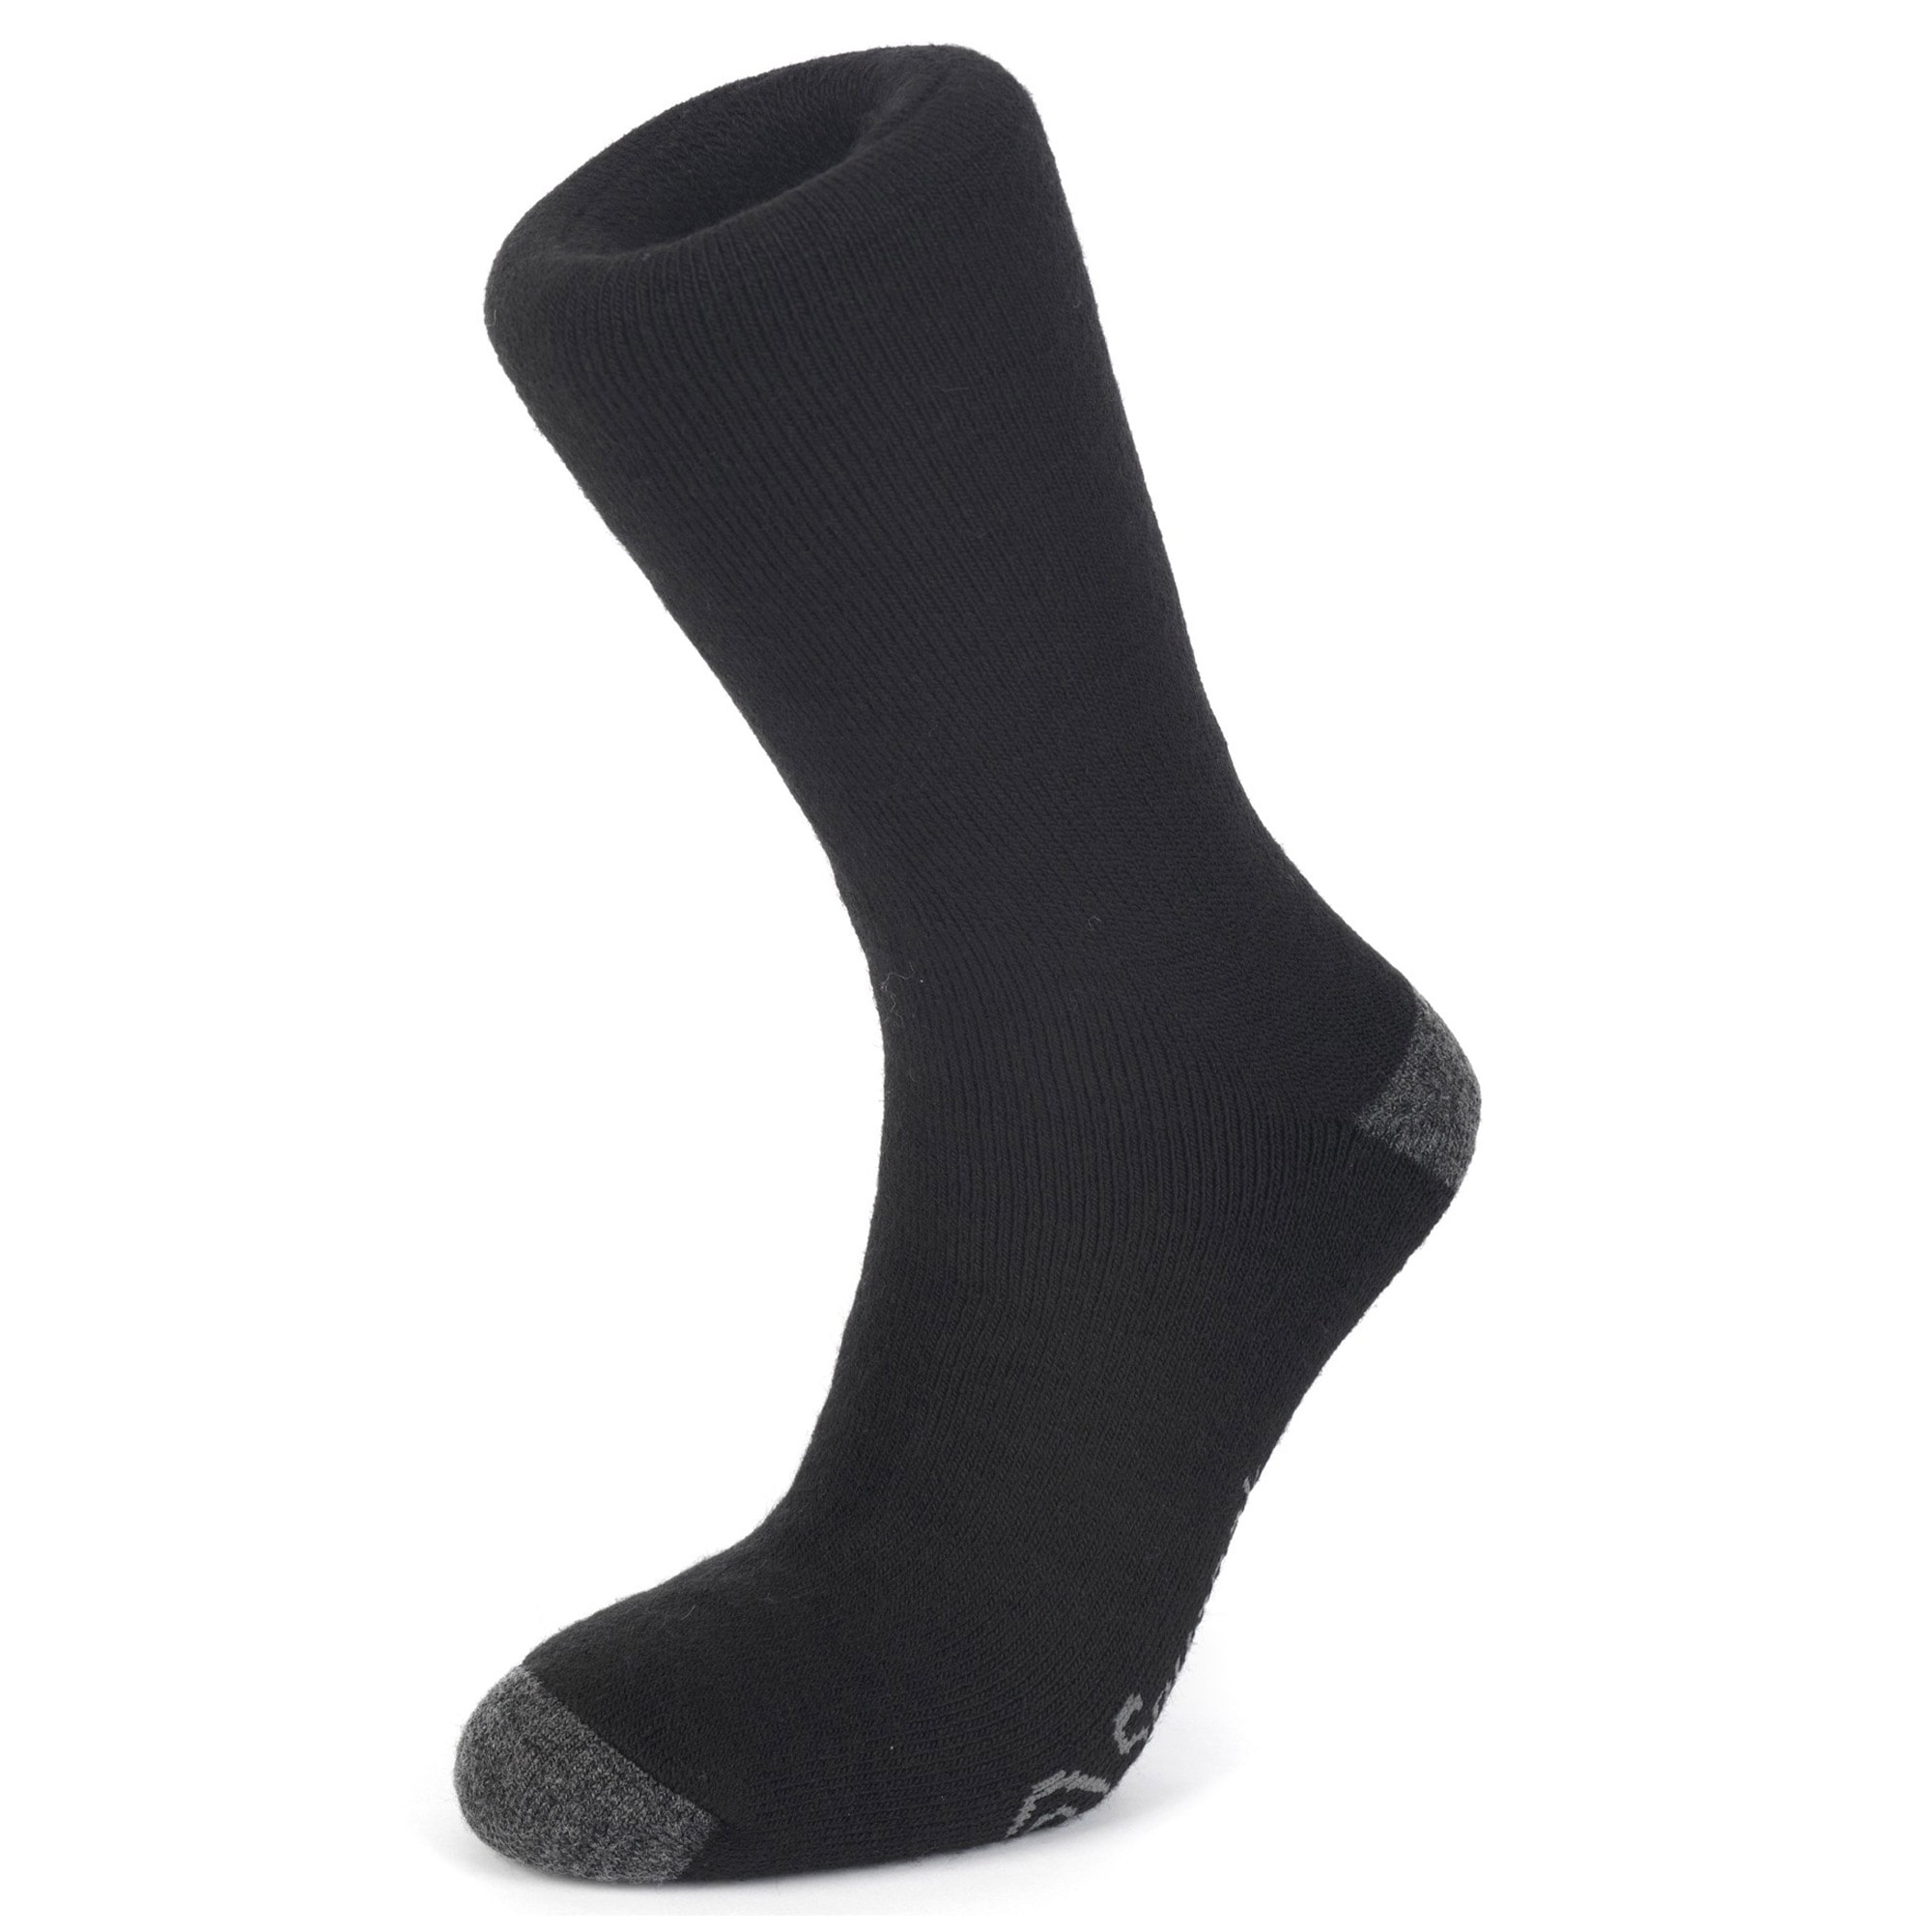 Purchase the Snugpak Merino Military Socks black by ASMC